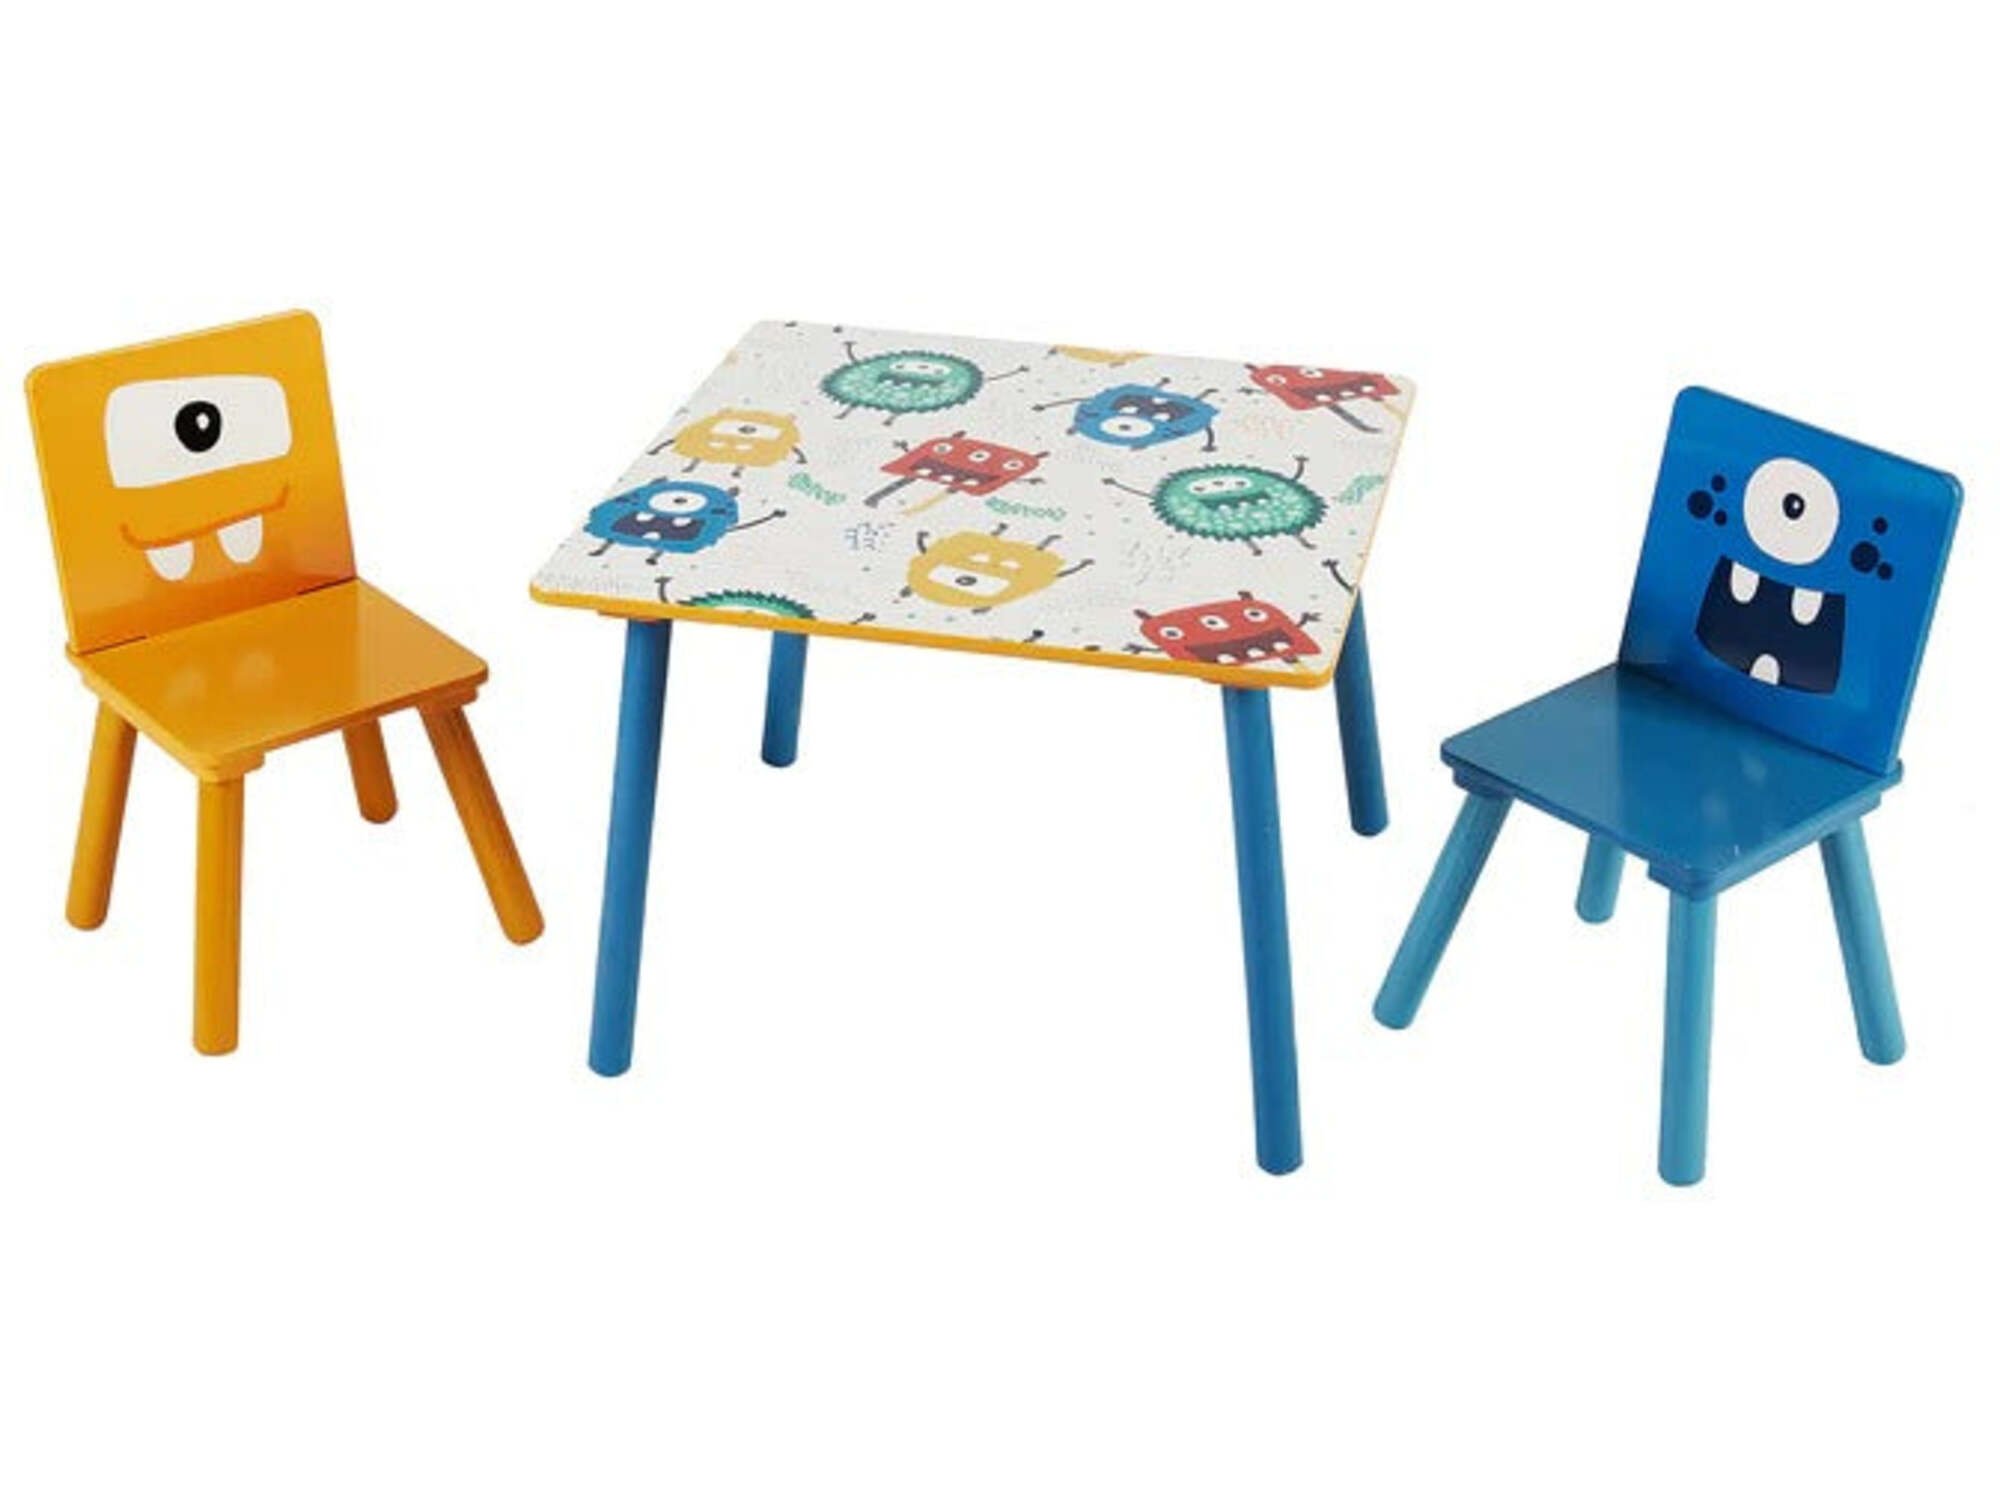 Kinder home Dečiji drveni sto sa 2 stolice, set - za igru, crtanje, jelo - DUHOVI